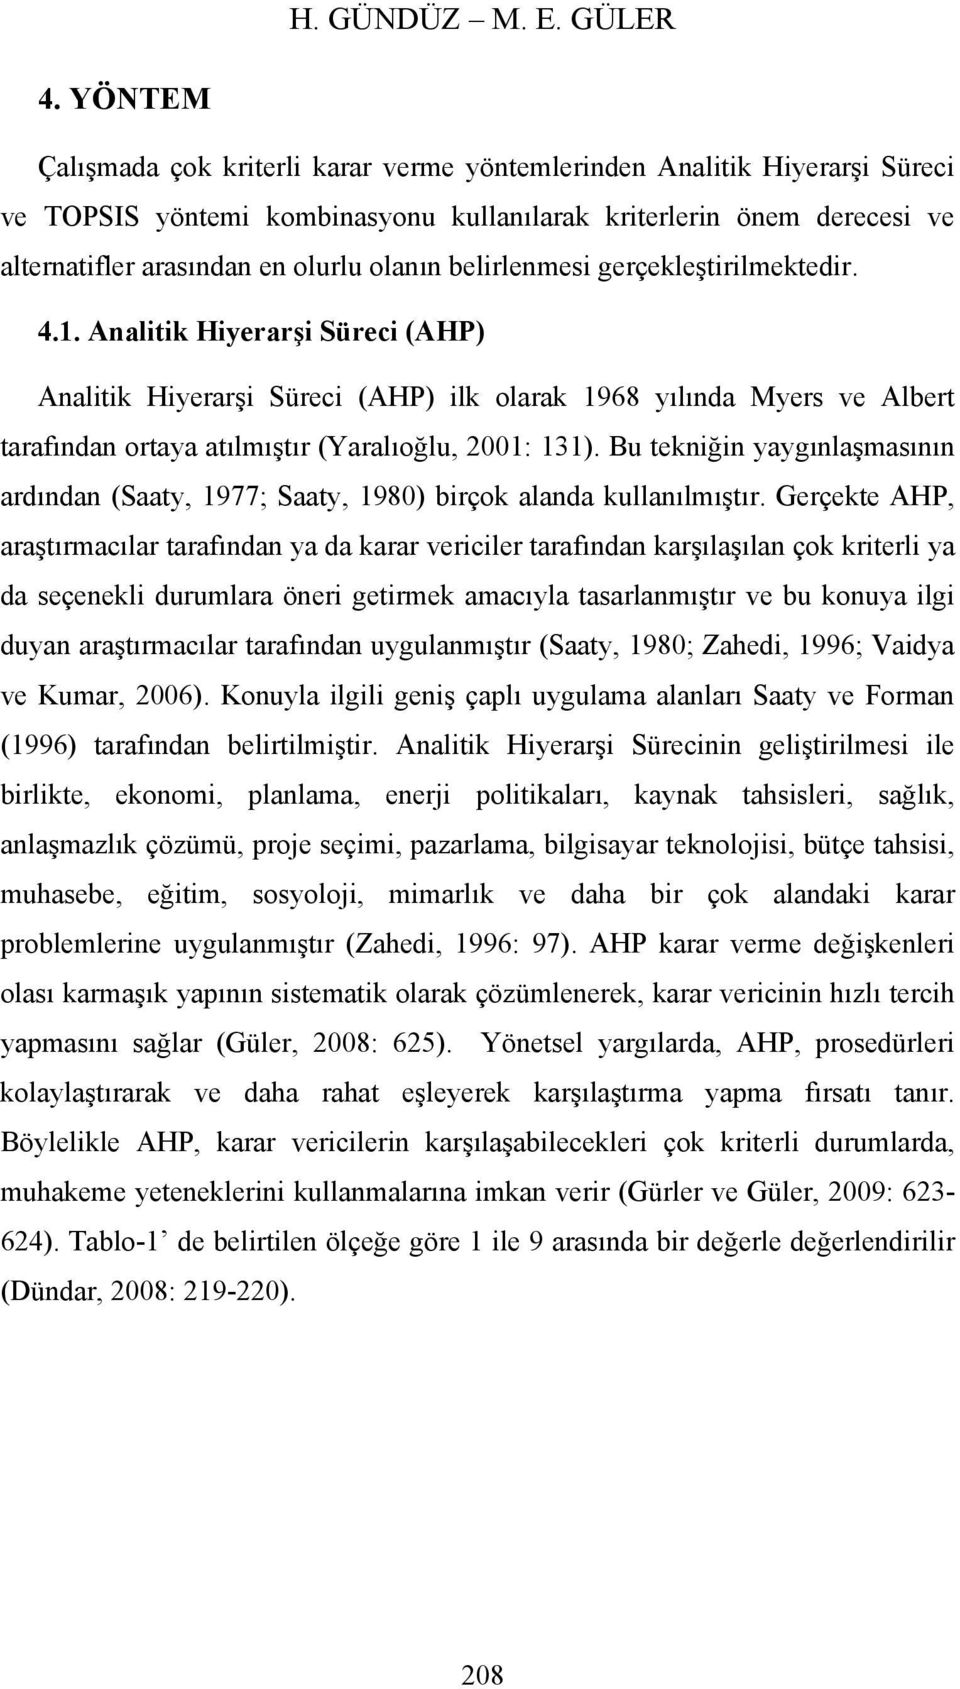 gerçekleştrlmektedr. 4.1. Analtk Hyerarş Sürec (AHP) Analtk Hyerarş Sürec (AHP) lk olarak 1968 yılında Myers ve Albert tarafından ortaya atılmıştır (Yaralıoğlu, 2001: 131).